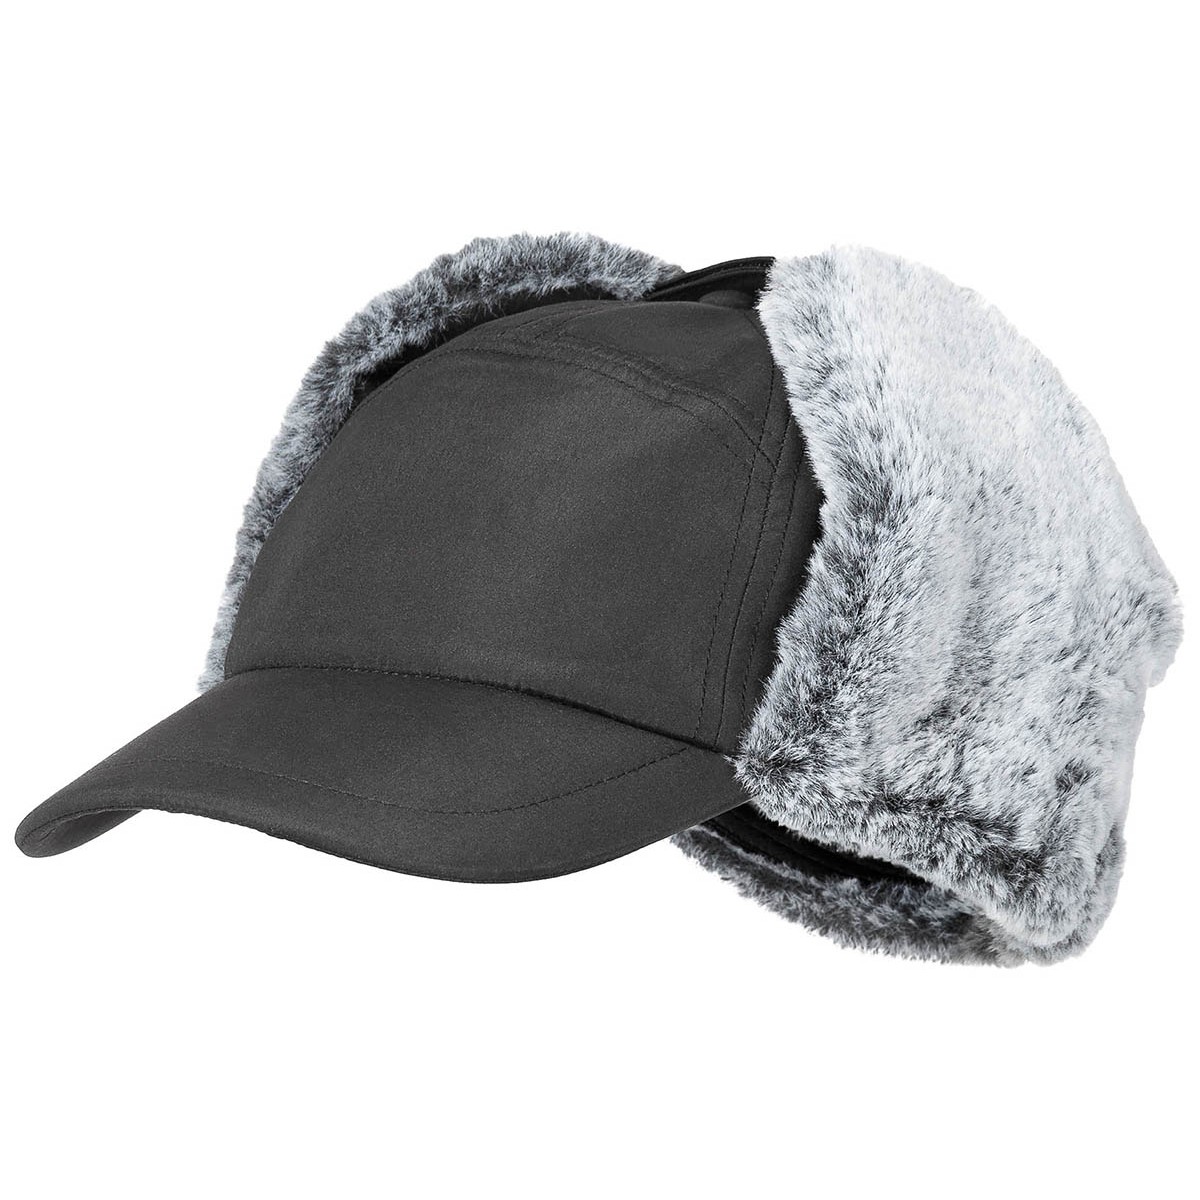 Čepice zimní s kšiltem Trapper - černá